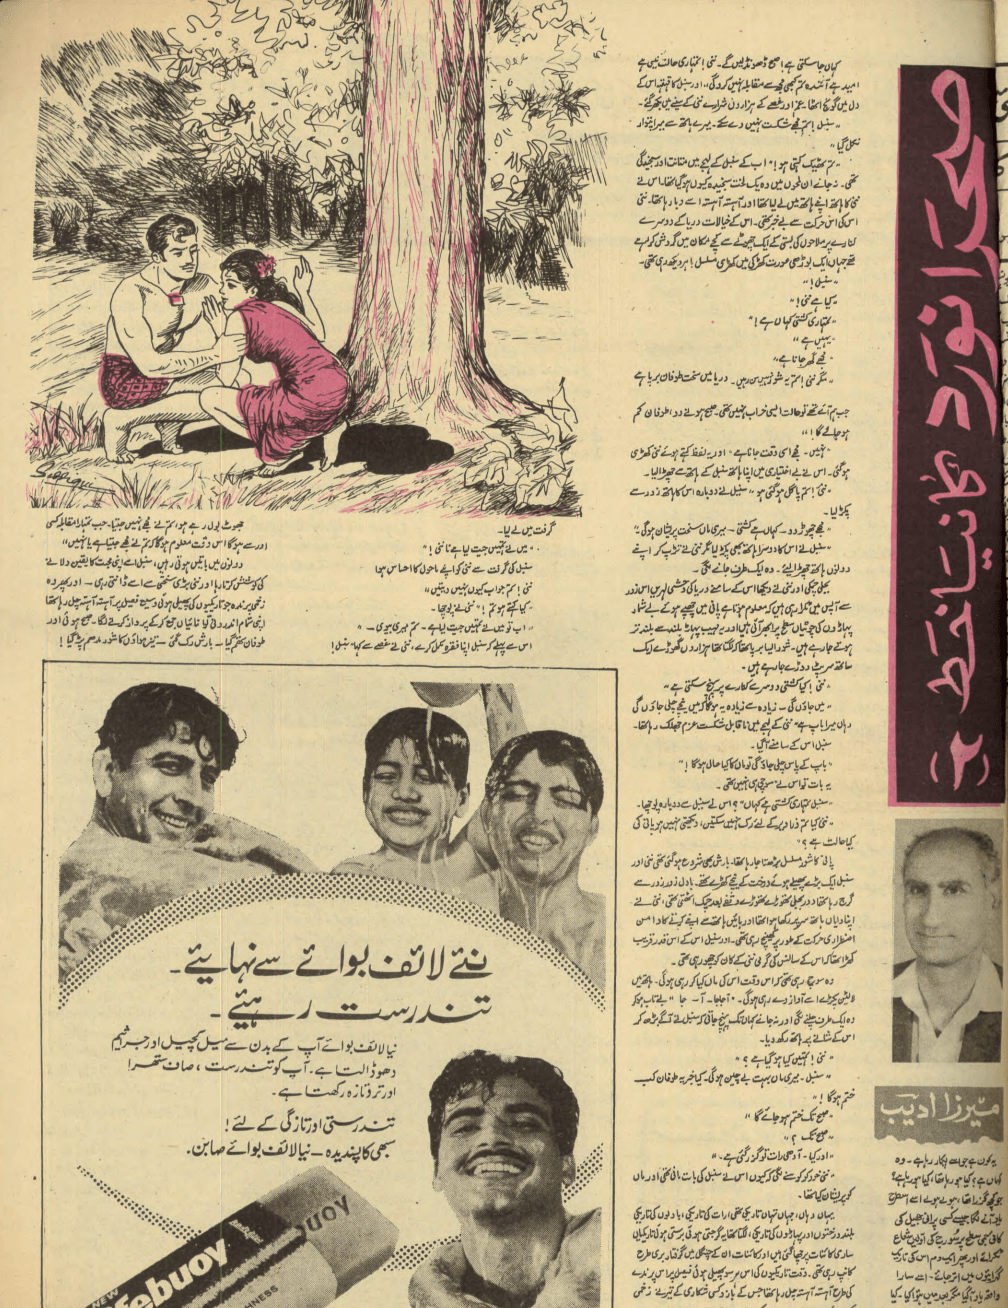 Akhbar-e-Jahan (Nov 19, 1969) - KHAJISTAN™